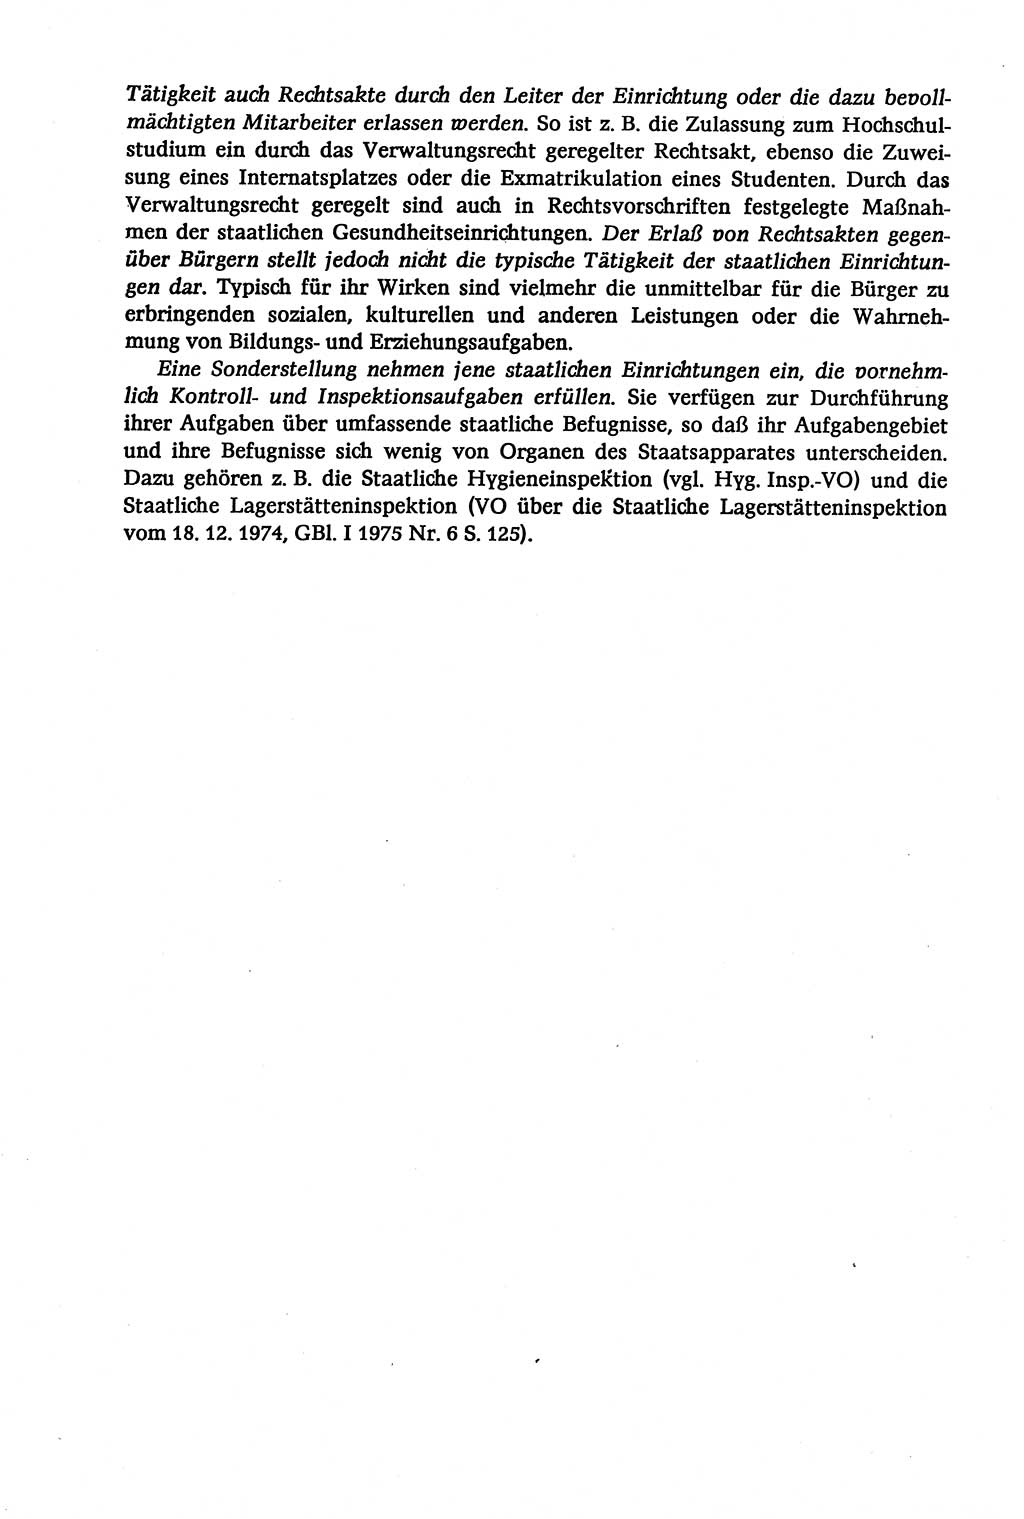 Verwaltungsrecht [Deutsche Demokratische Republik (DDR)], Lehrbuch 1979, Seite 160 (Verw.-R. DDR Lb. 1979, S. 160)